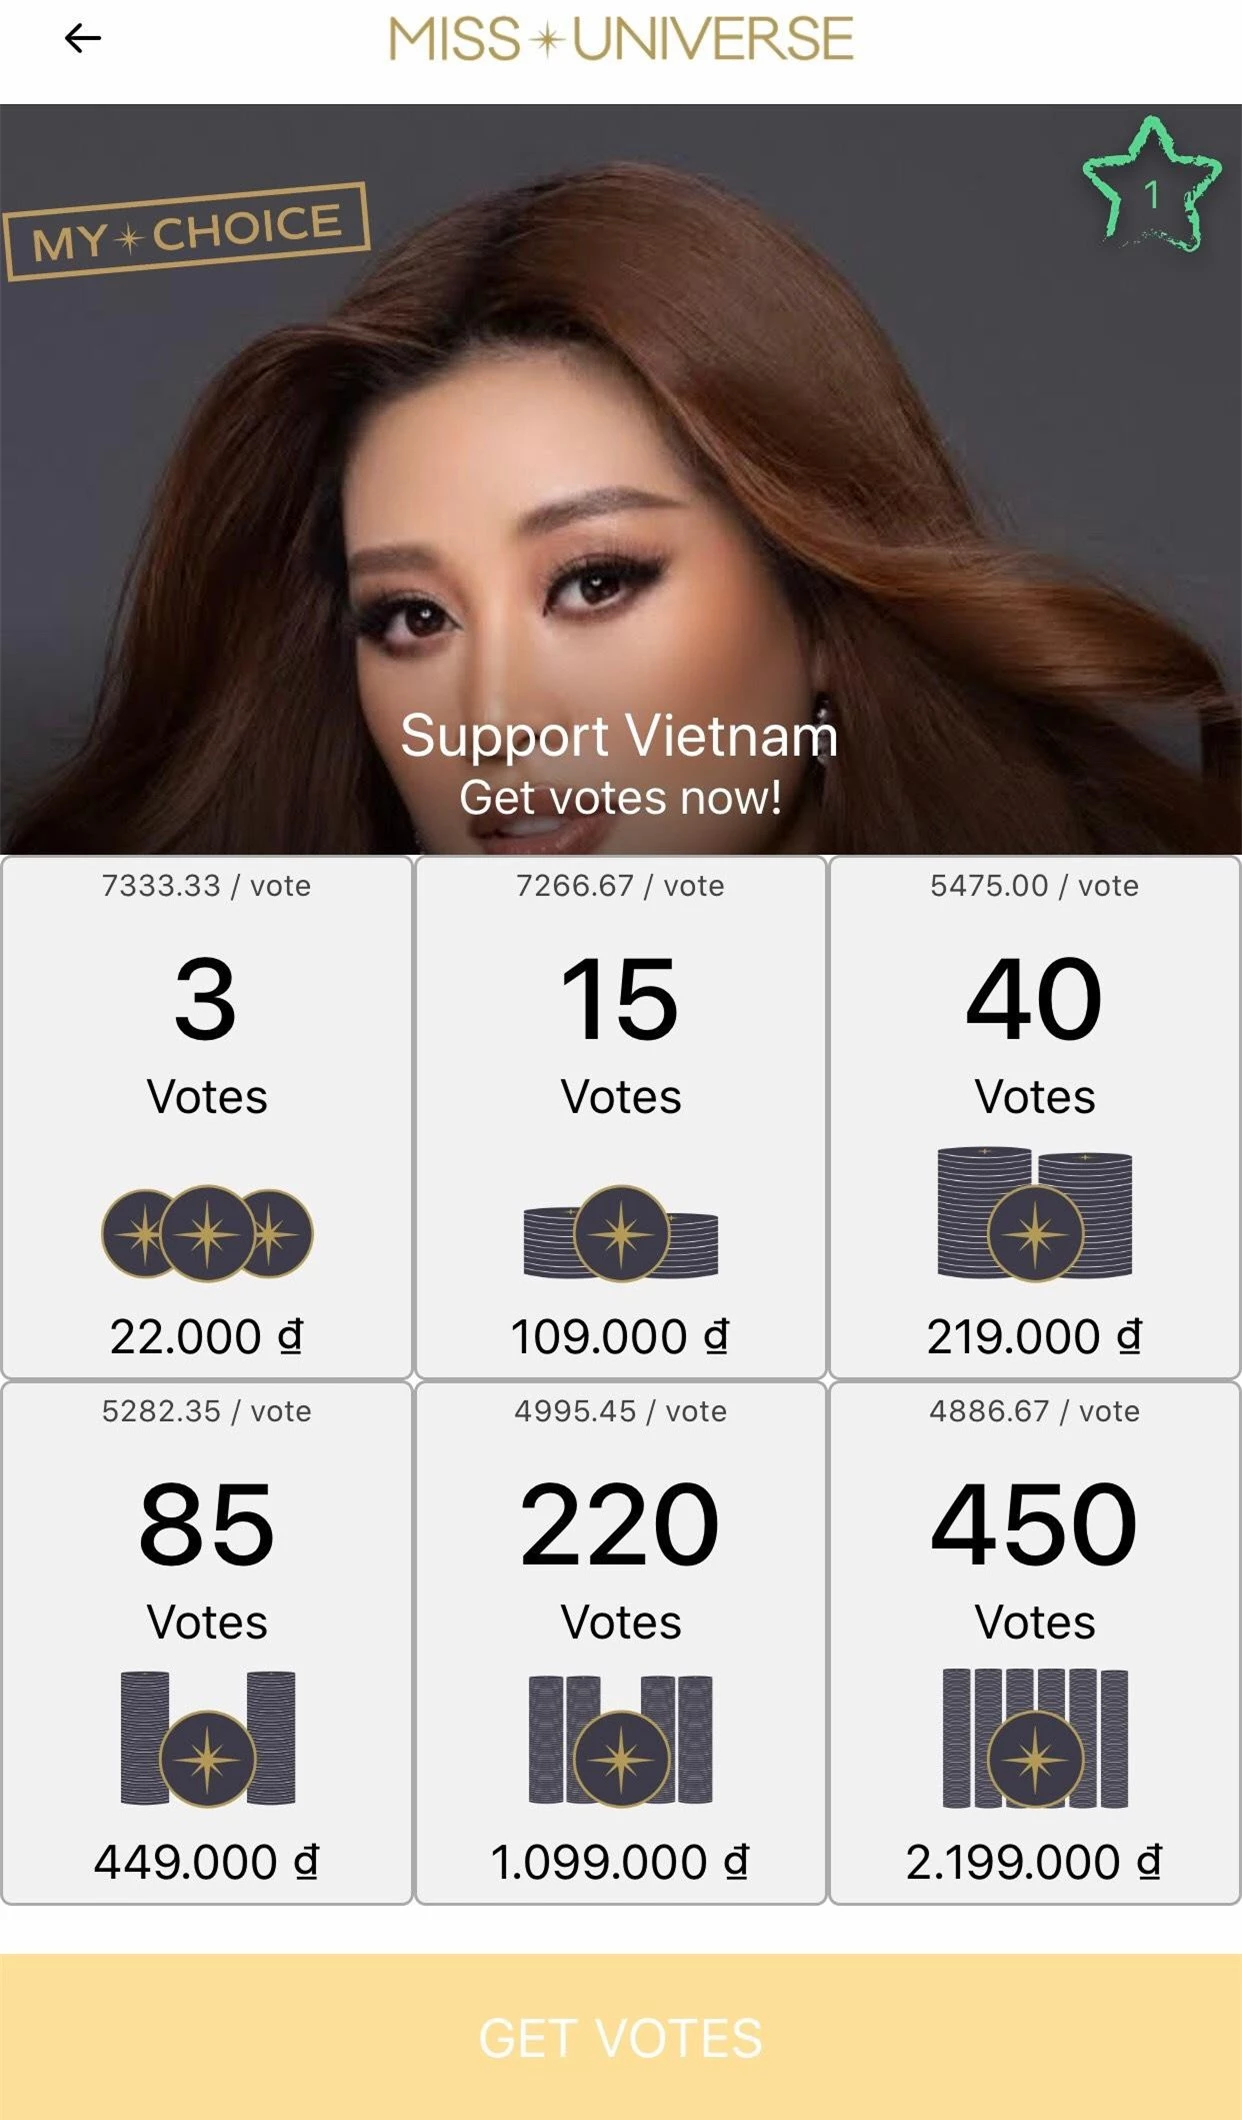 Ảnh profile chính thức của Khánh Vân được đăng tải trên trang chủ Miss Universe ảnh 2